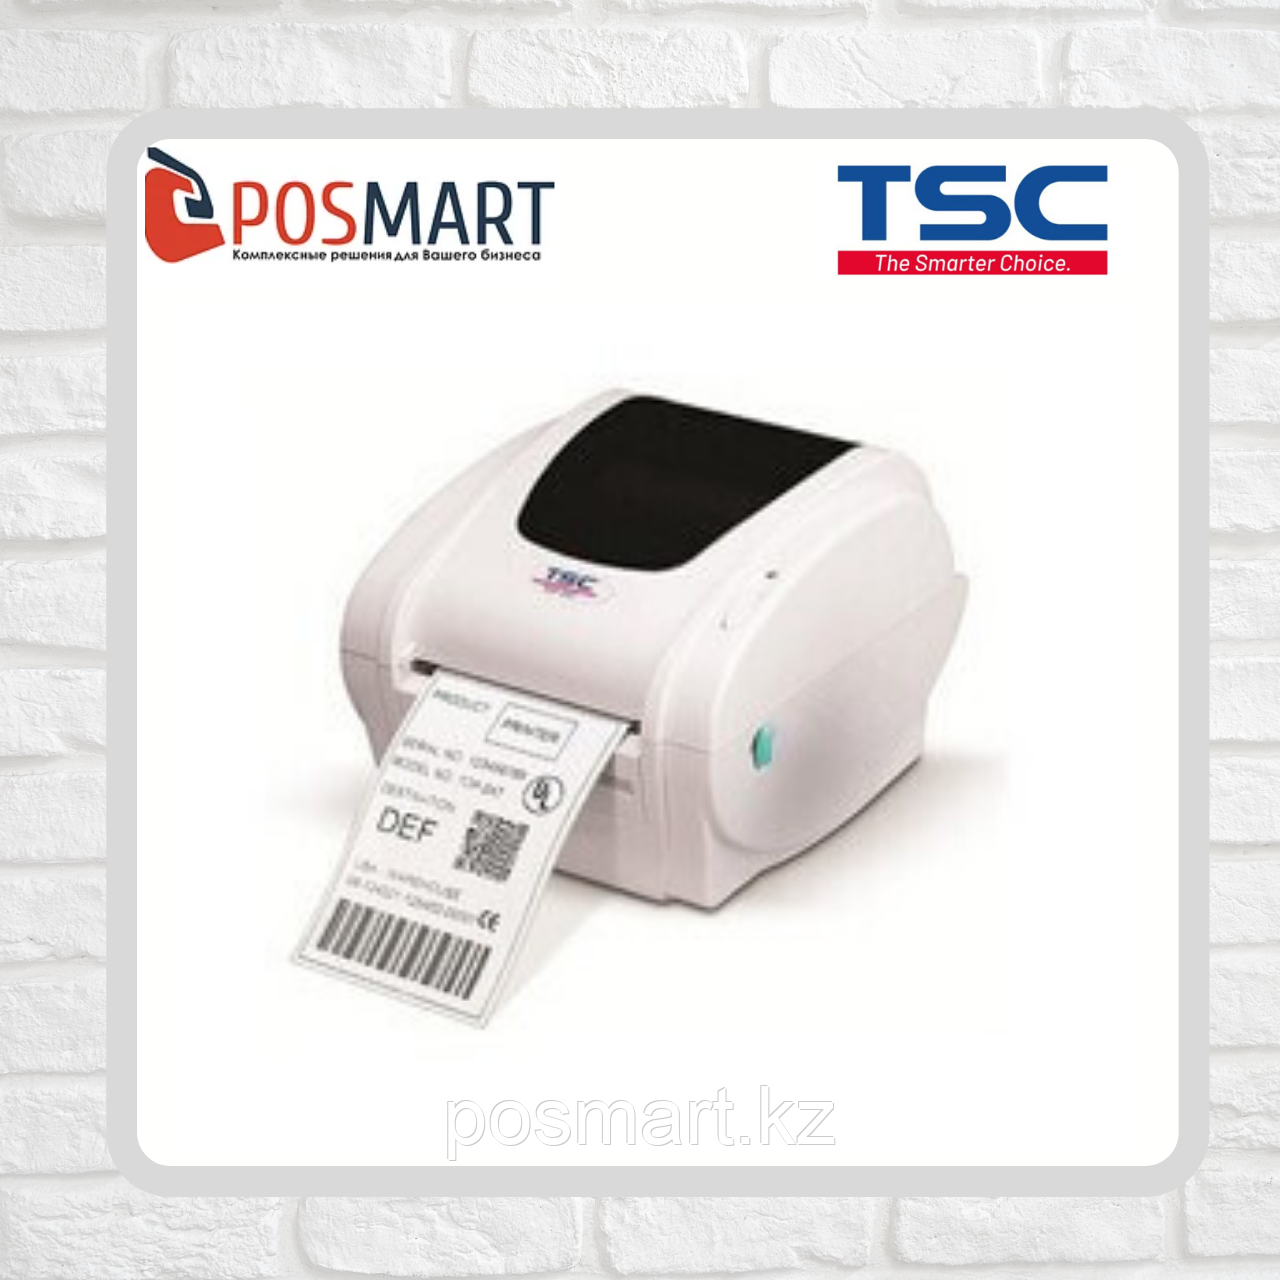 Термо принтер TSC TDP-247, фото 1